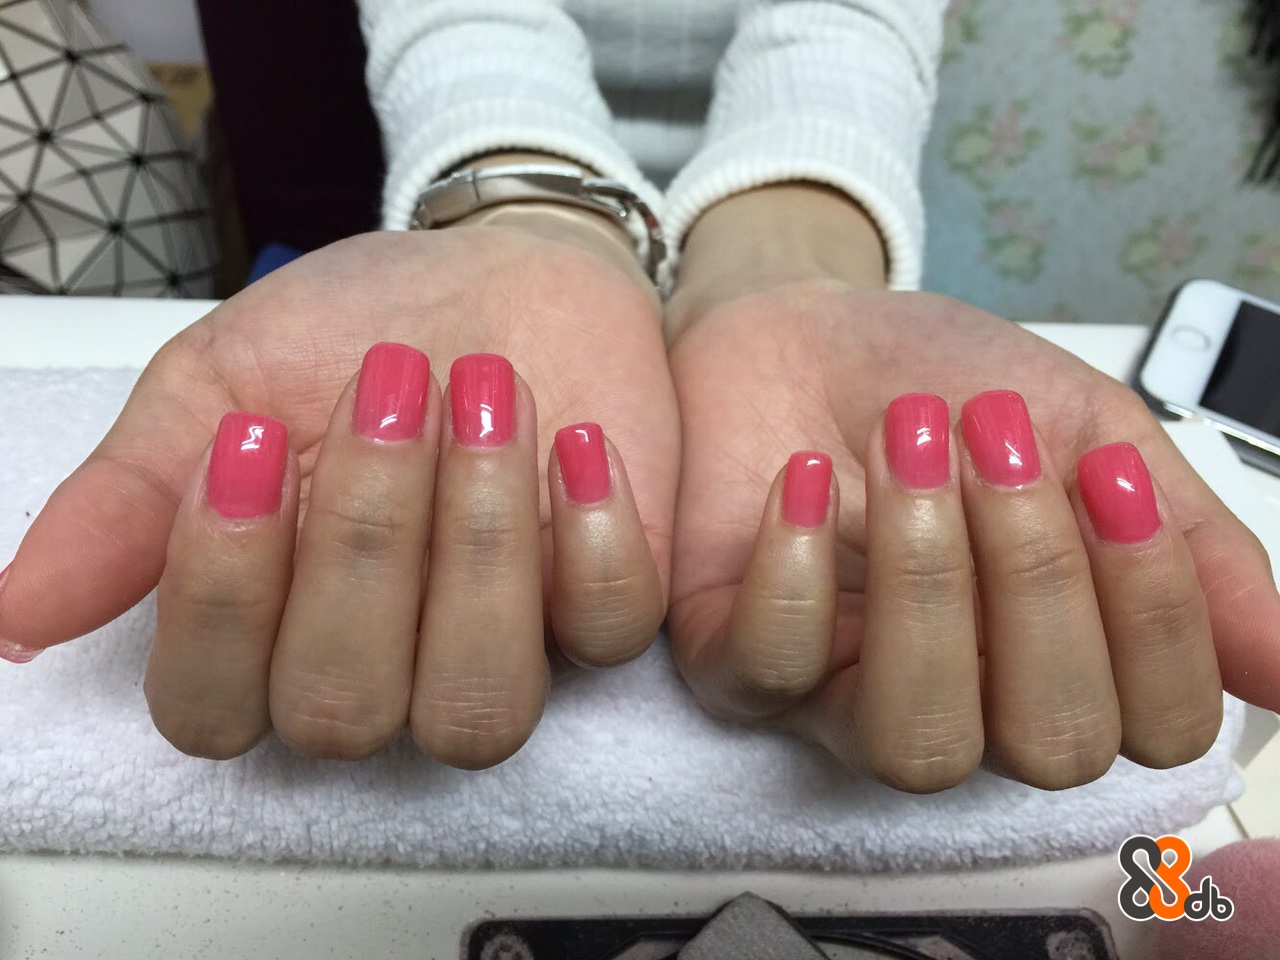  nail,finger,hand,nail care,nail polish